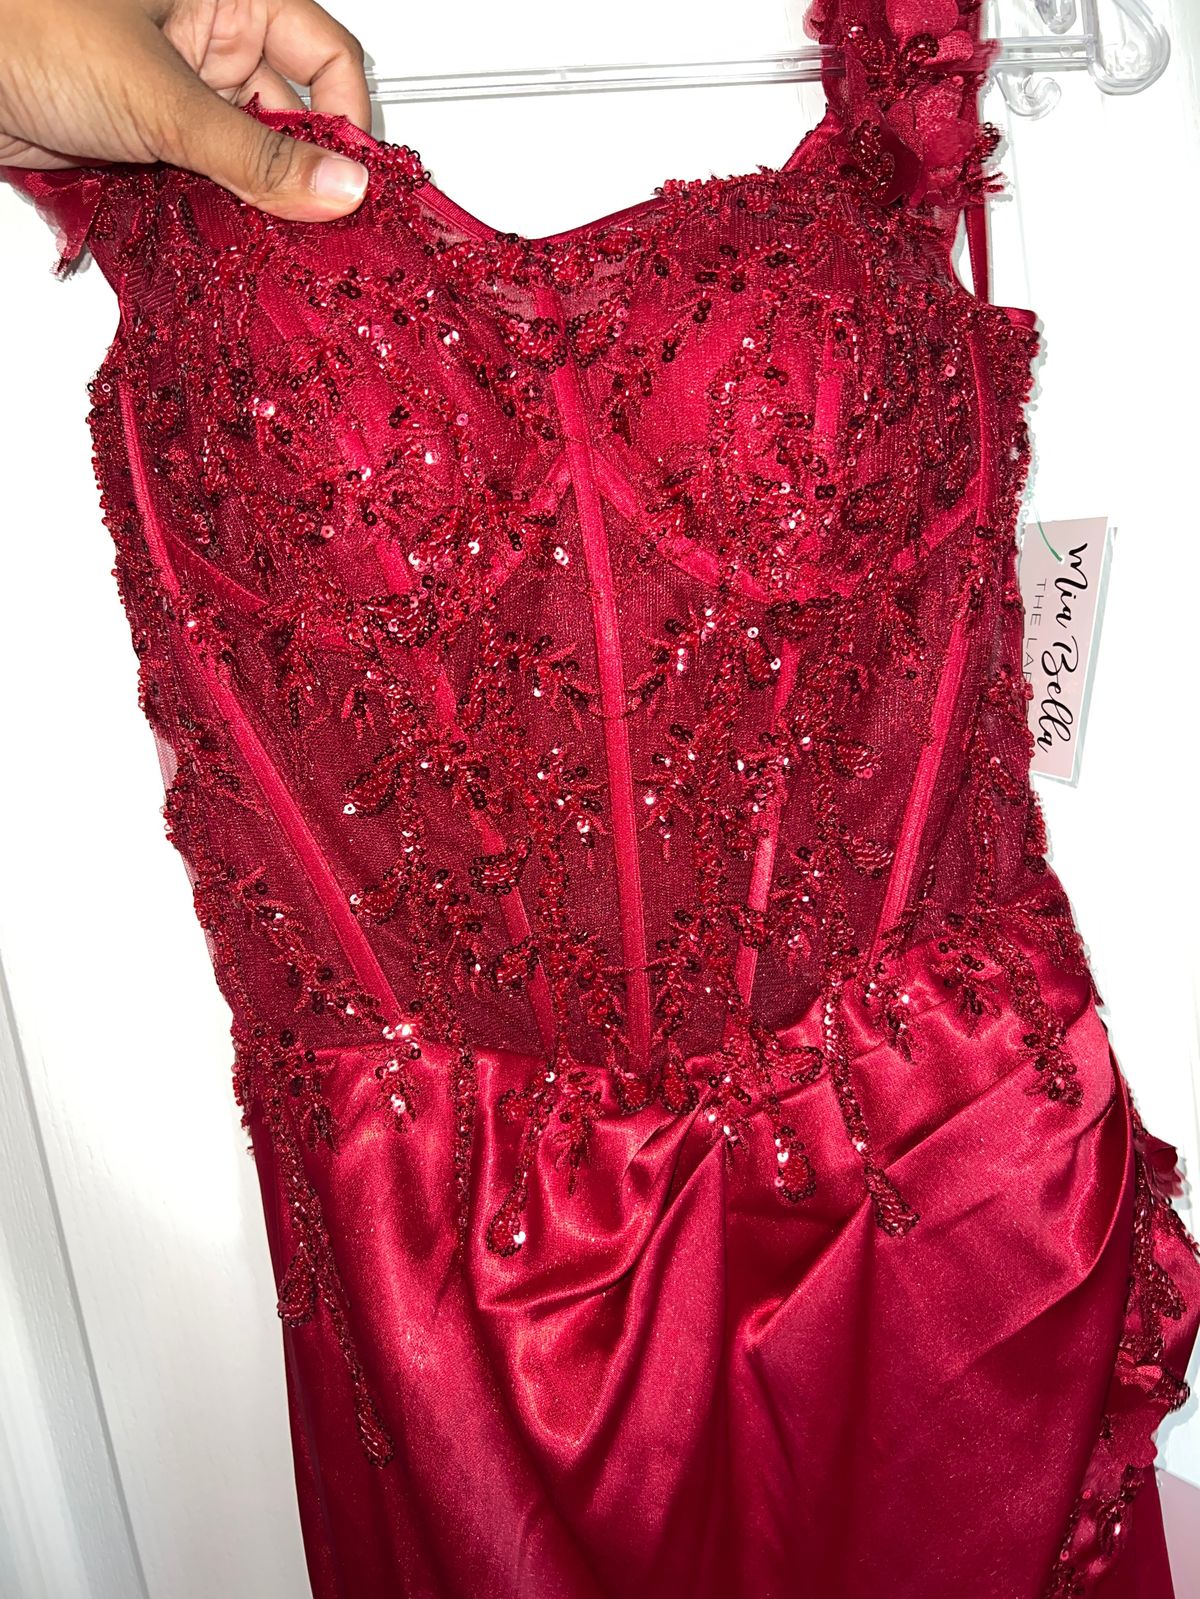 Cinderella Divine Size 8 Prom Off The Shoulder Lace Burgundy Red Side Slit  Dress on Queenly